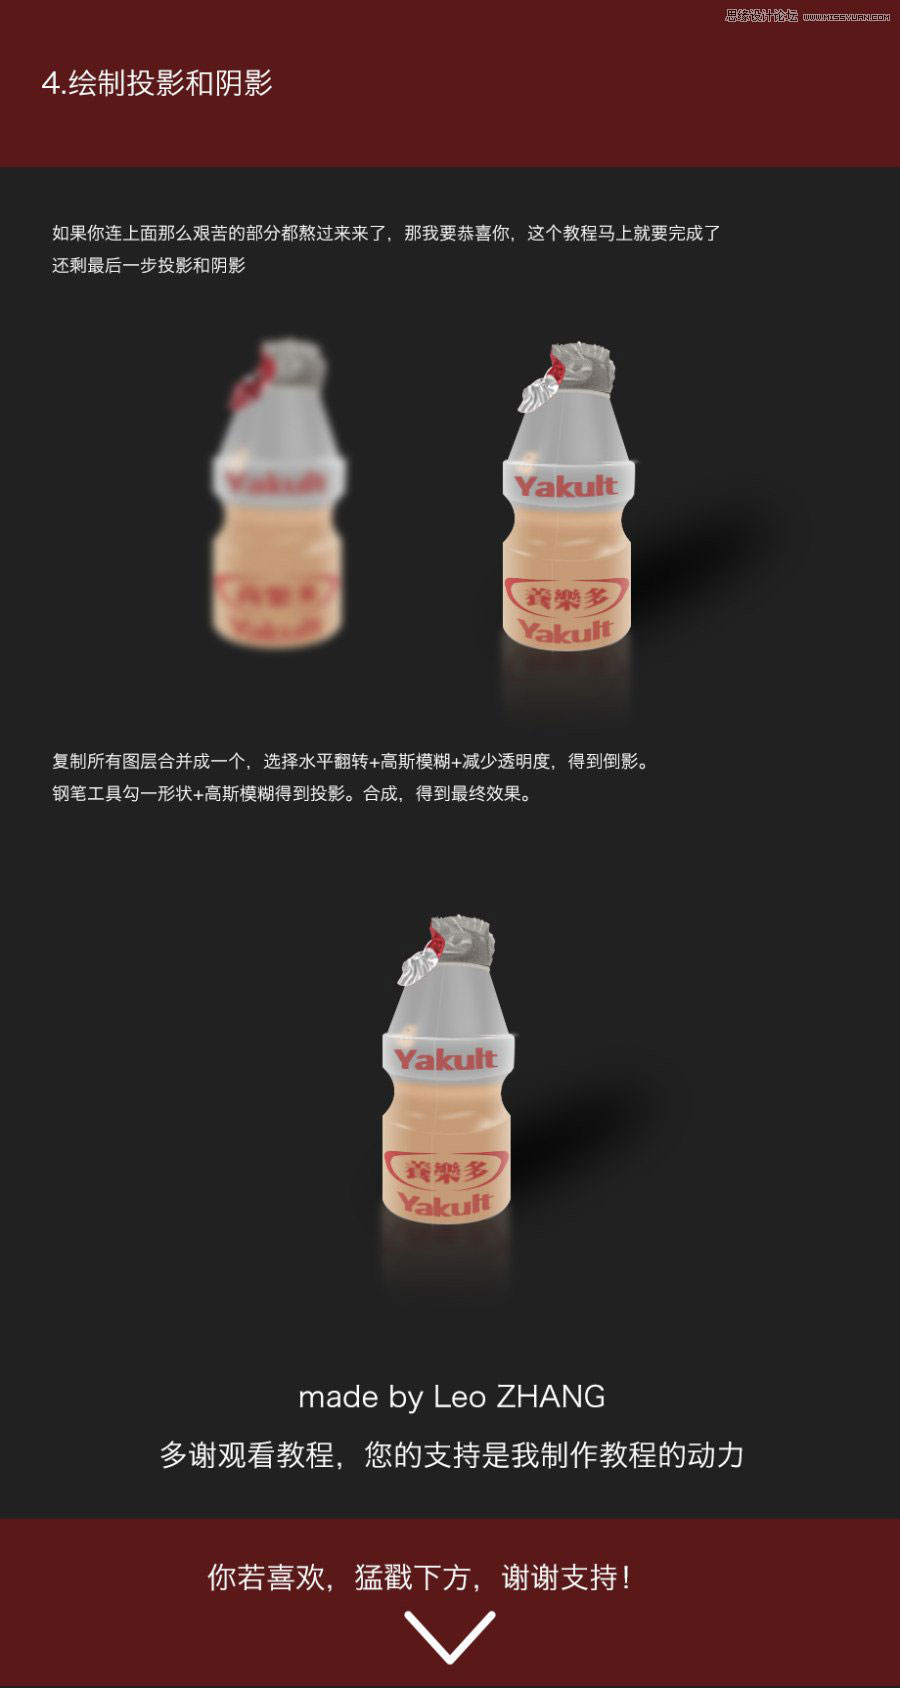 Photoshop详细解析养乐多乳酸菌奶瓶的绘制过程